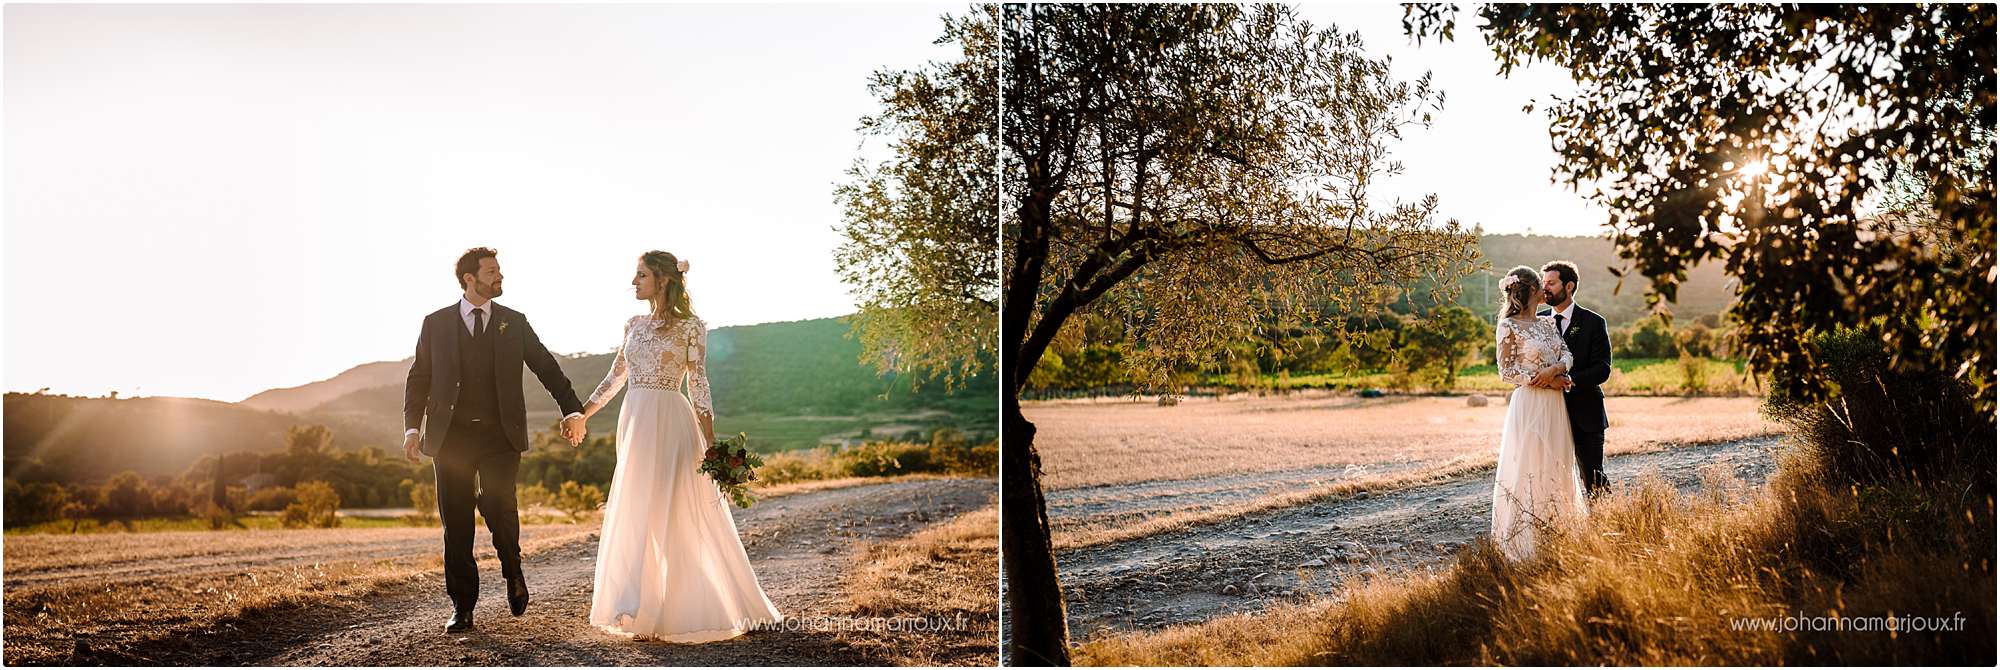 Photographe de mariage en Aveyron